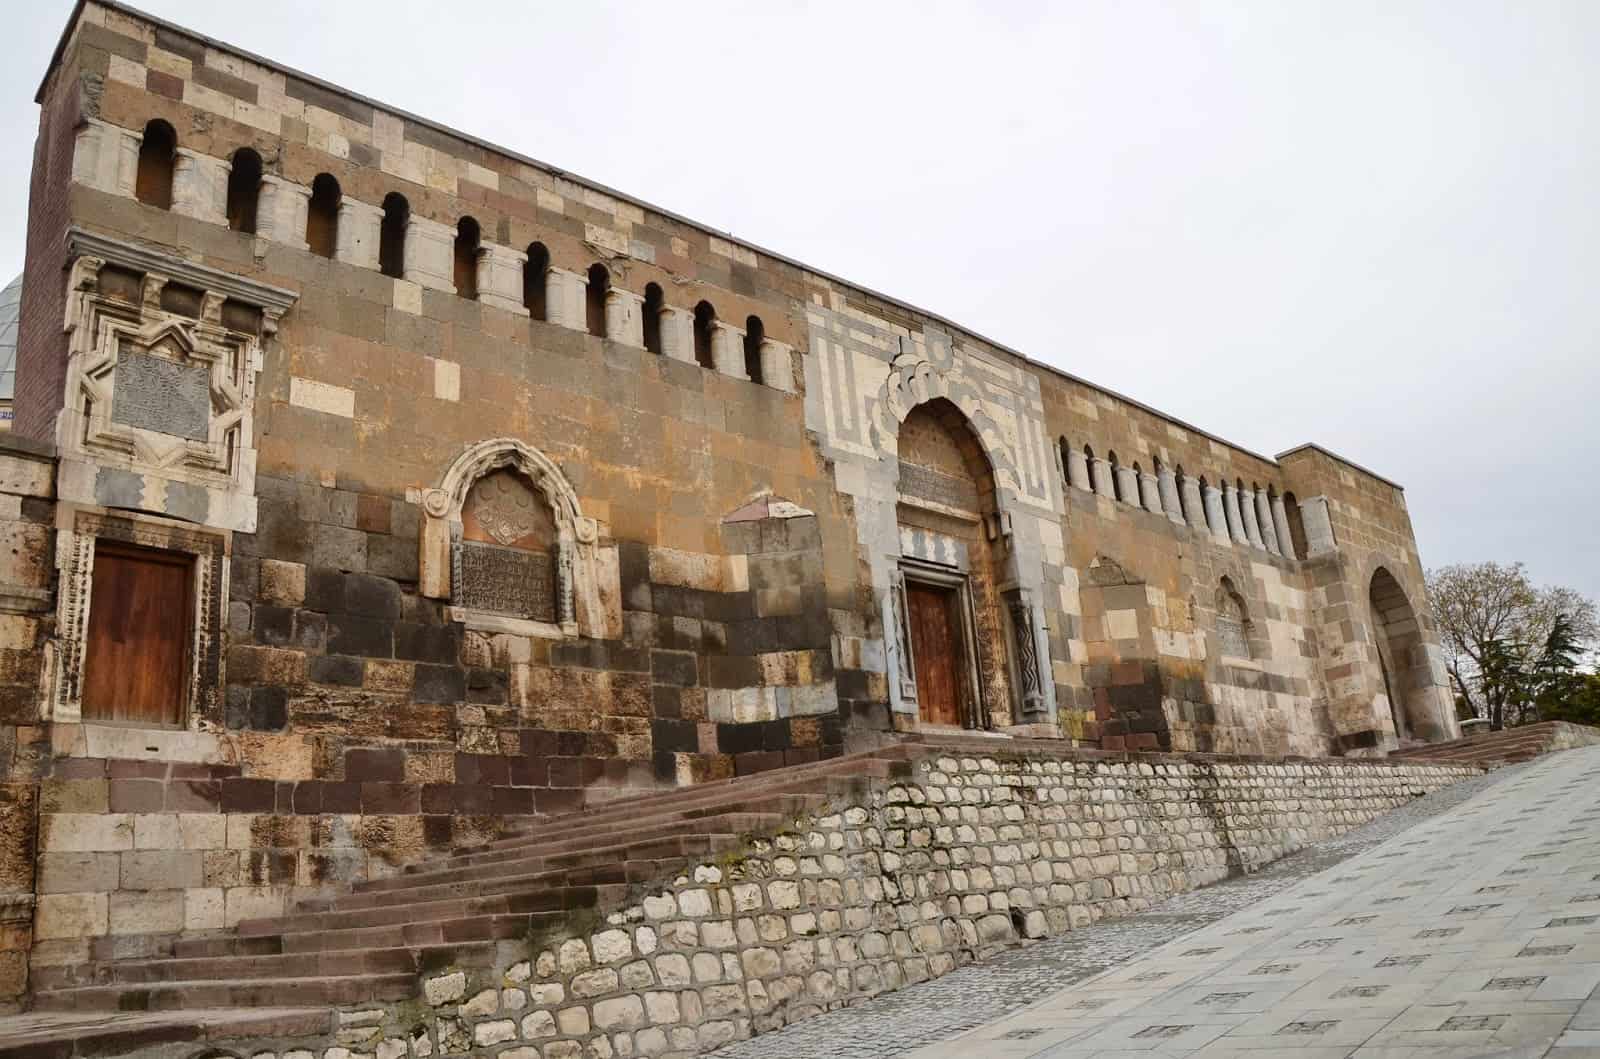 Alâeddin Camii gate in Konya, Turkey